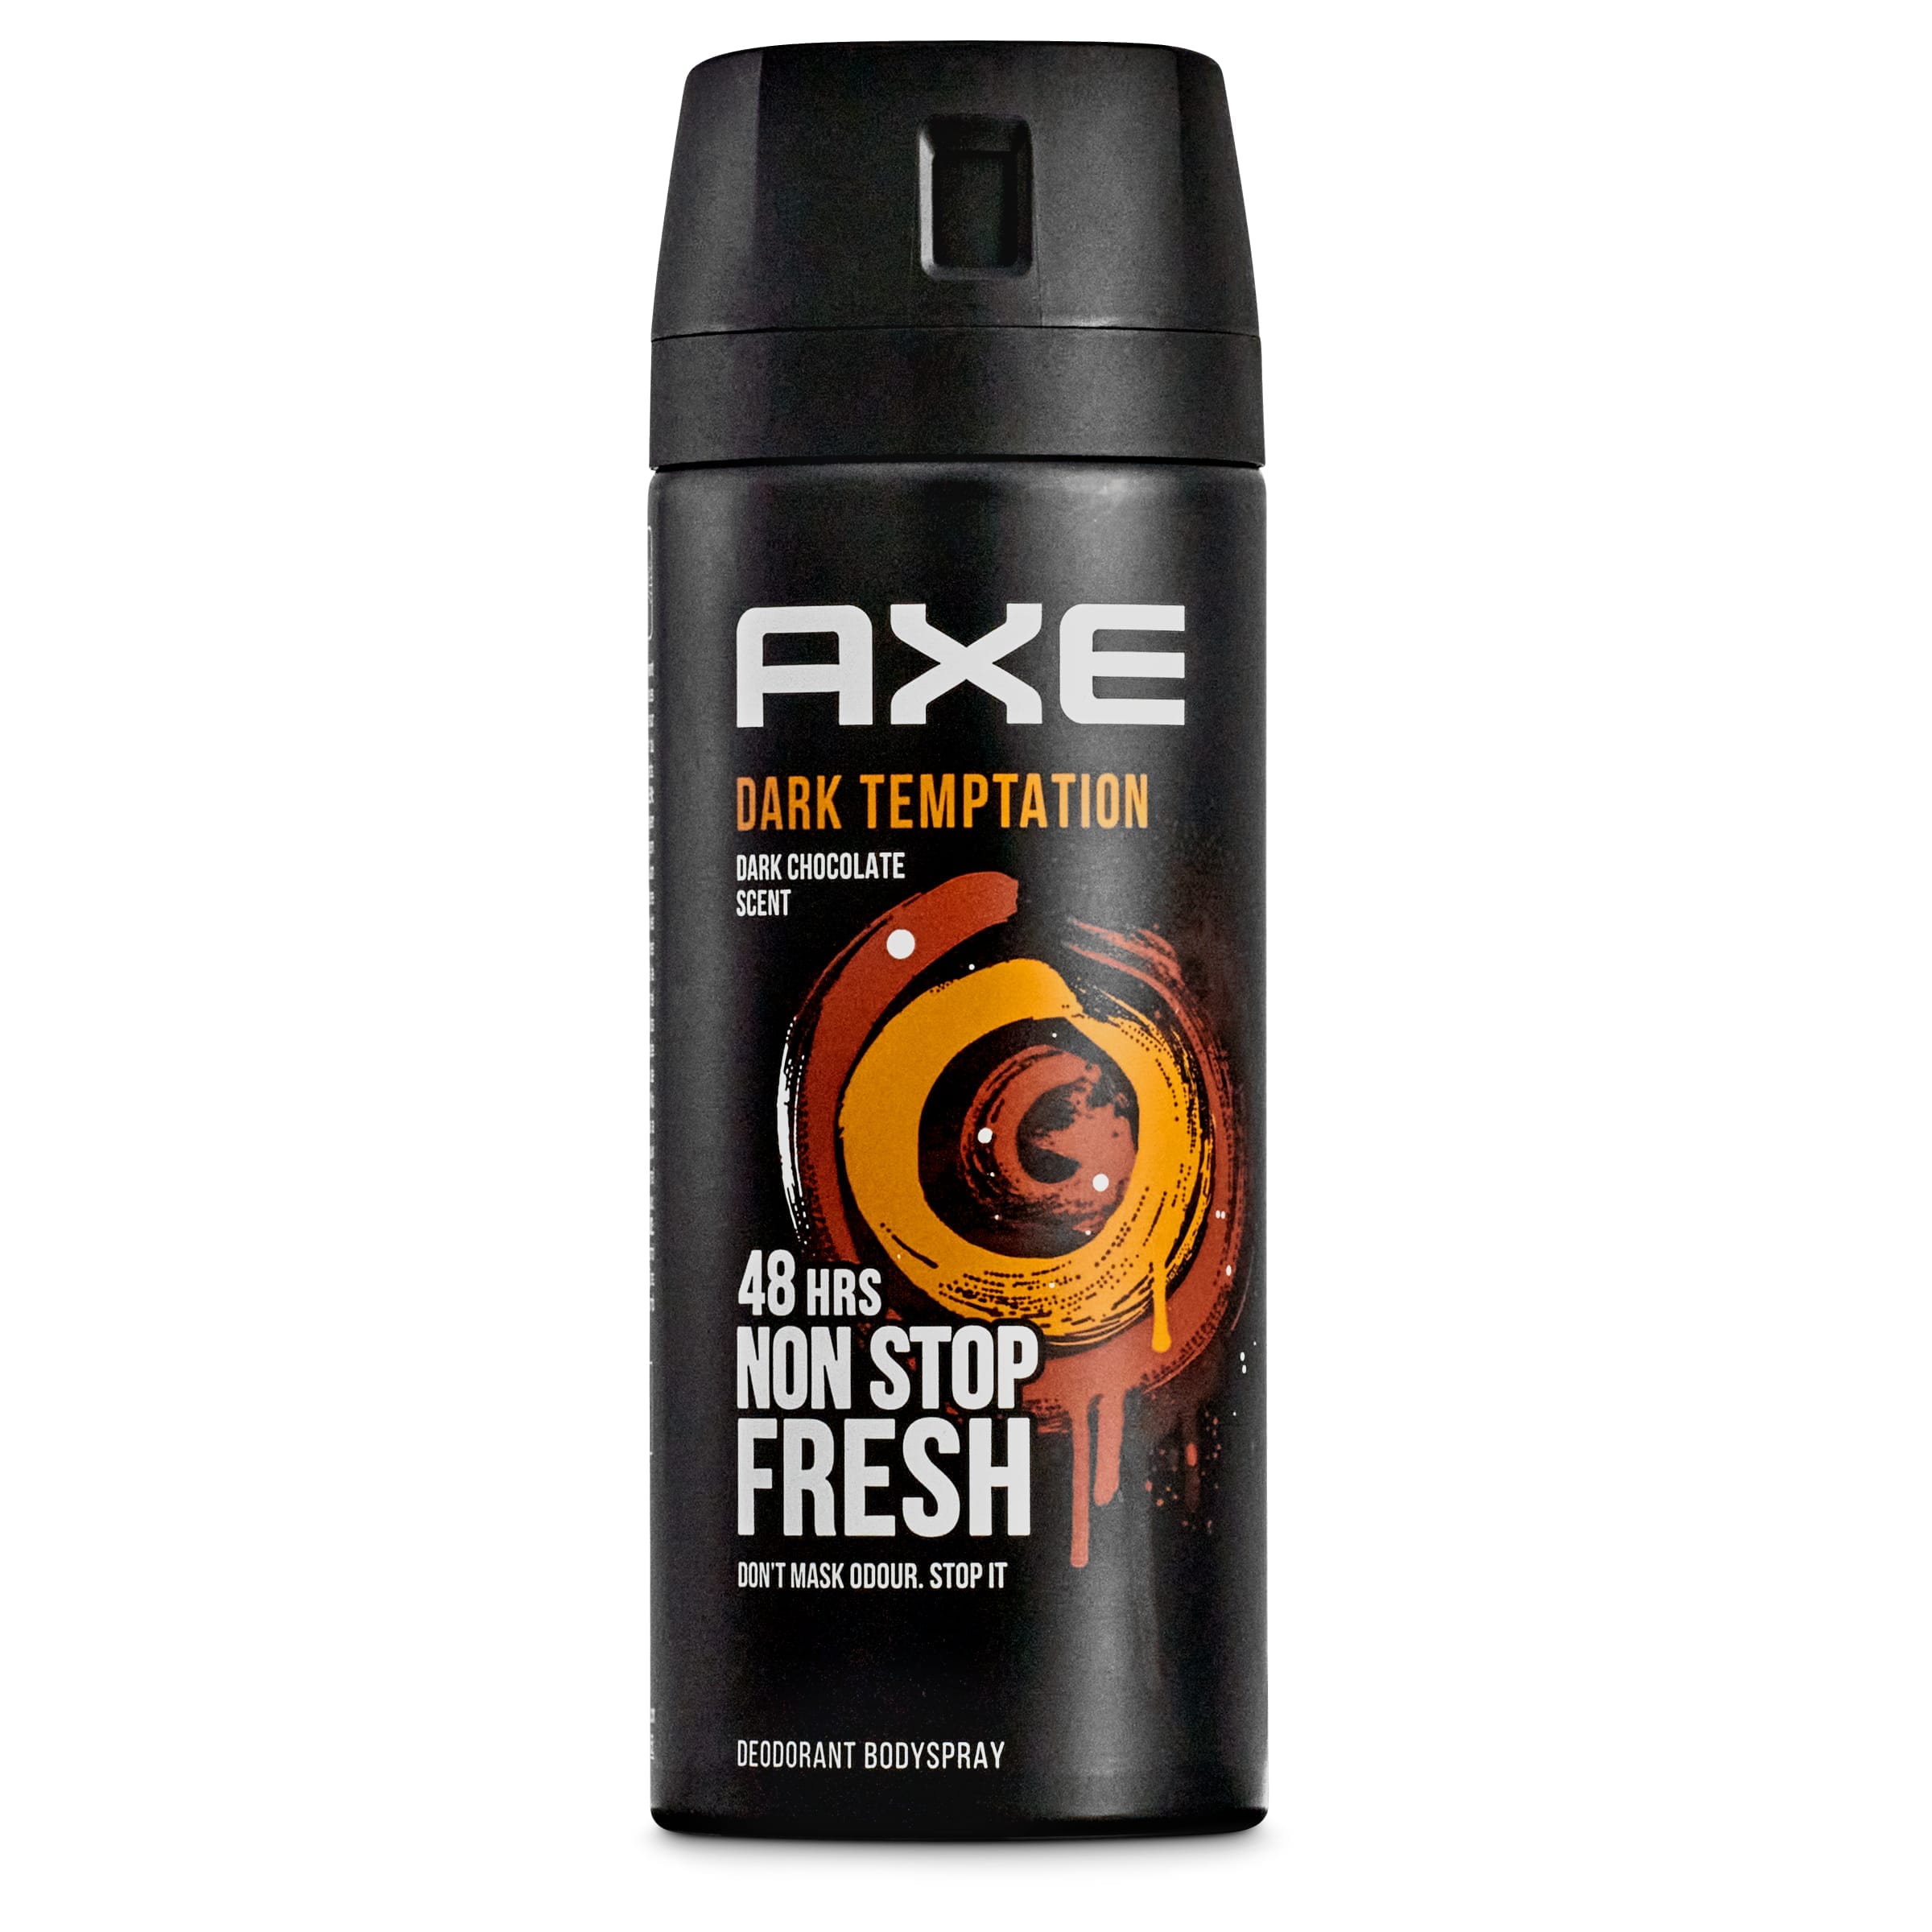 Desodorante dark temptation Axe spray 150 ml - Supermercados DIA